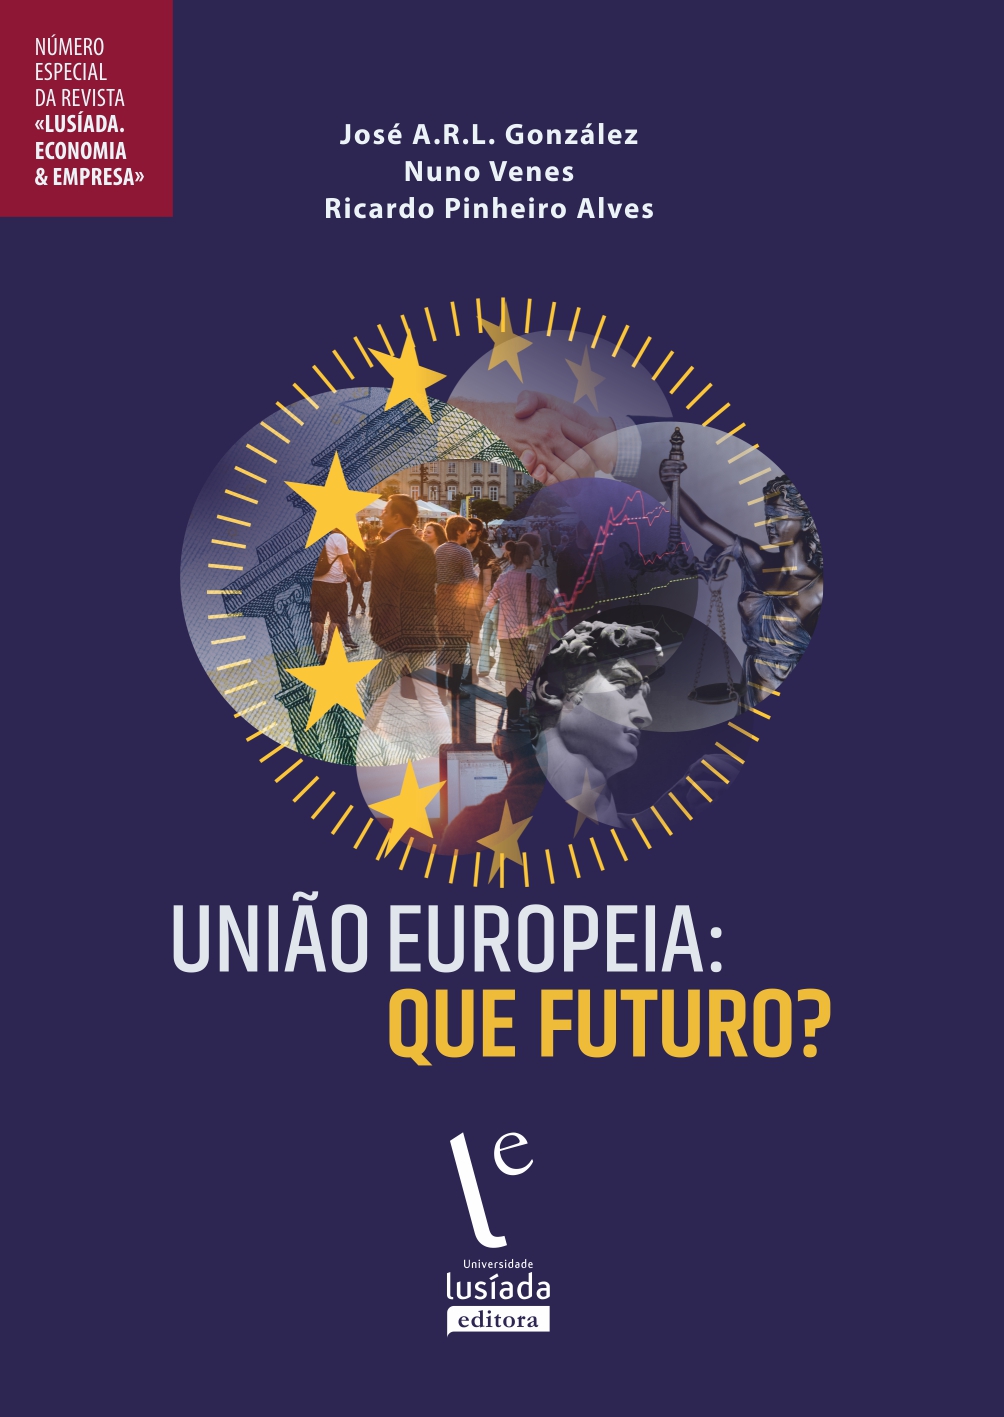 Lusíada. Economia & Empresa, n. especial (2023) - Universidade Lusíada Editora